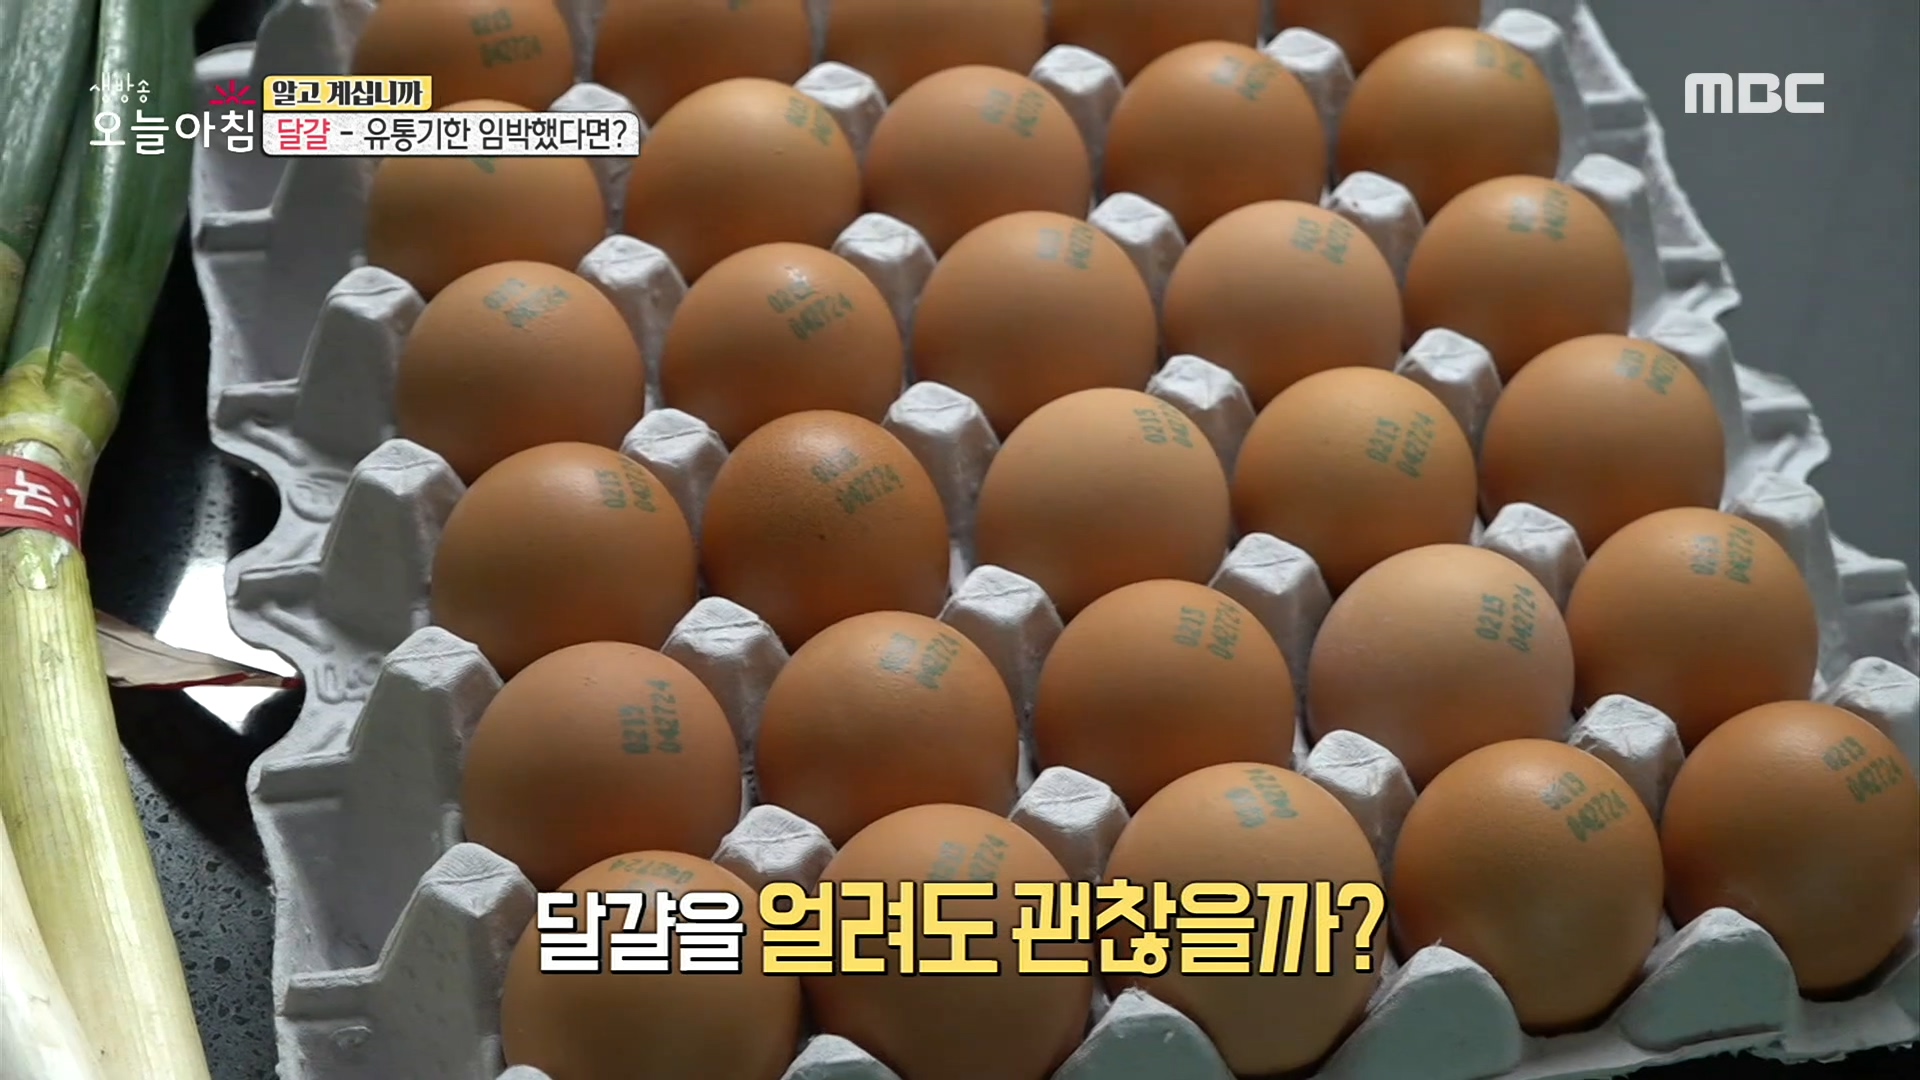 위치만 바꿔도 오래 먹는다? '달걀' 보관법!, MBC 210304 방송 - 곰TV